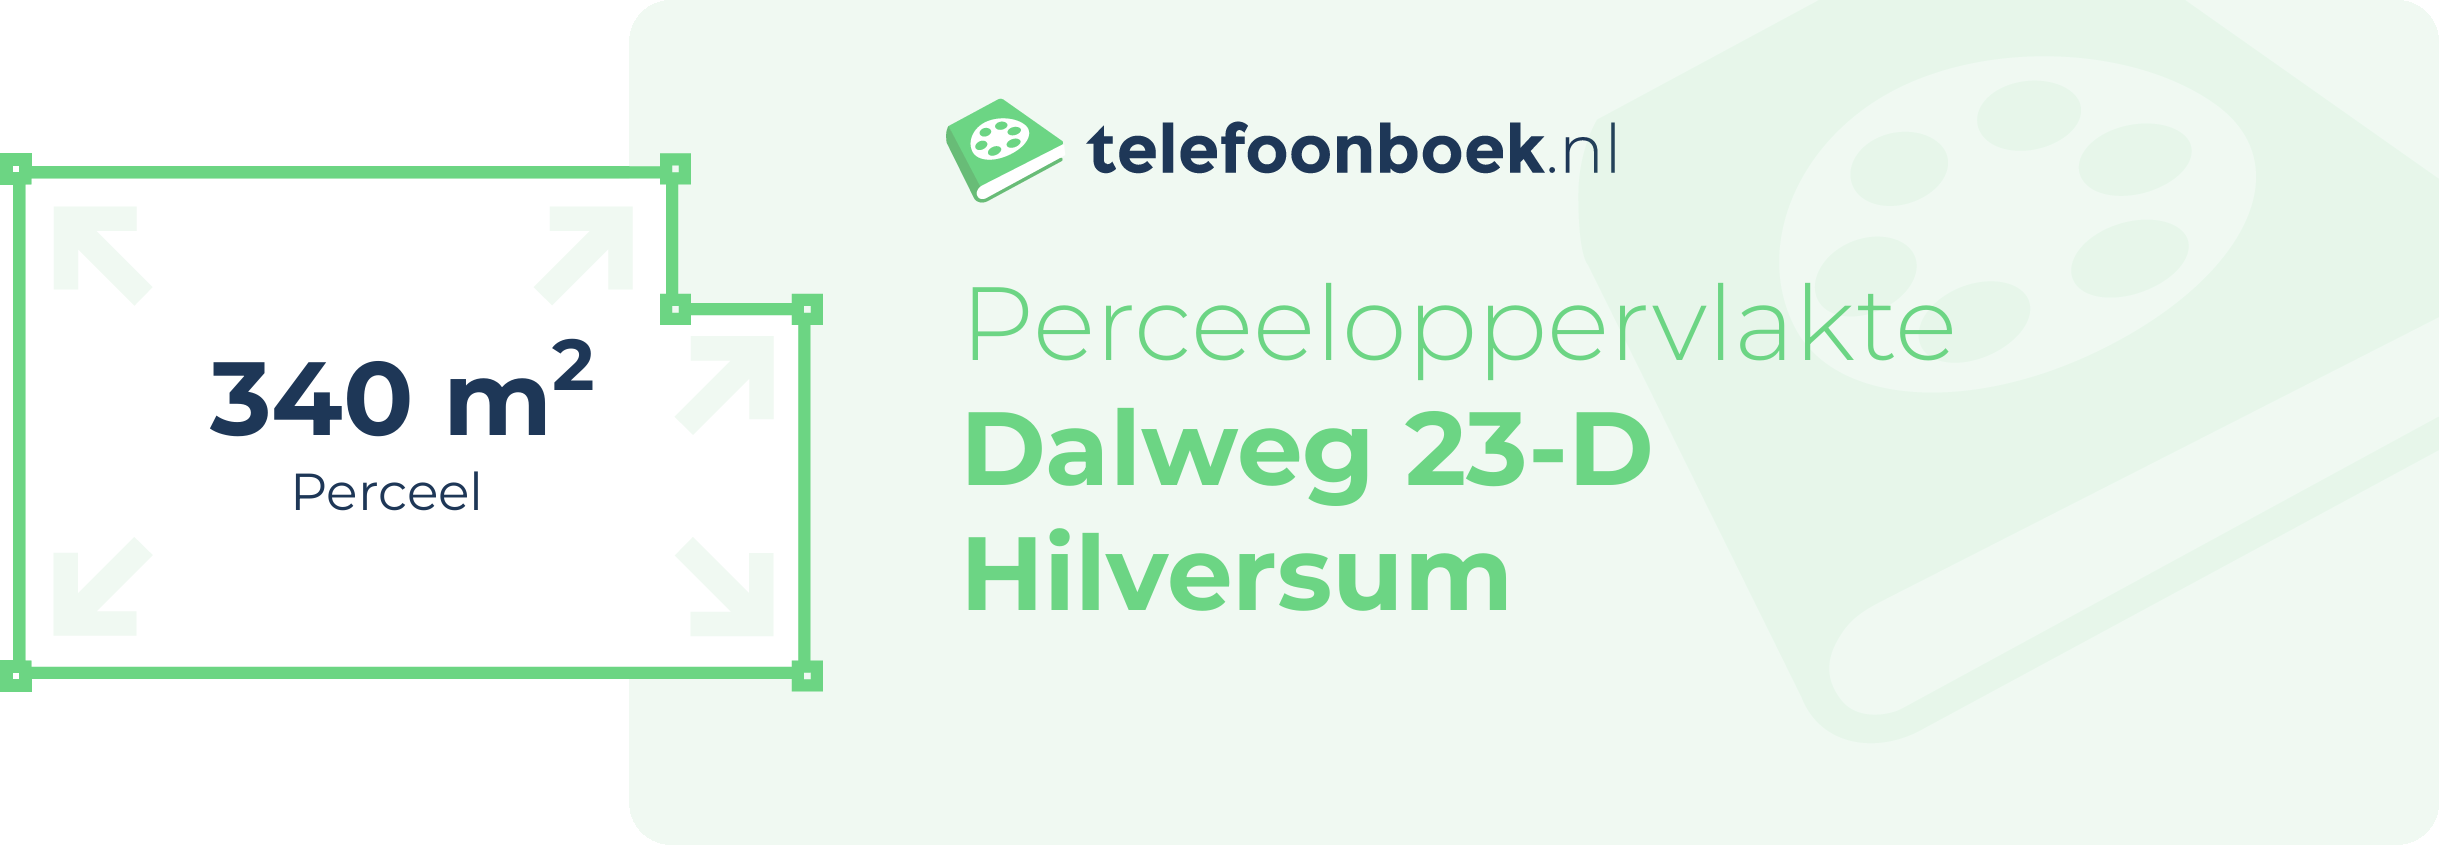 Perceeloppervlakte Dalweg 23-D Hilversum